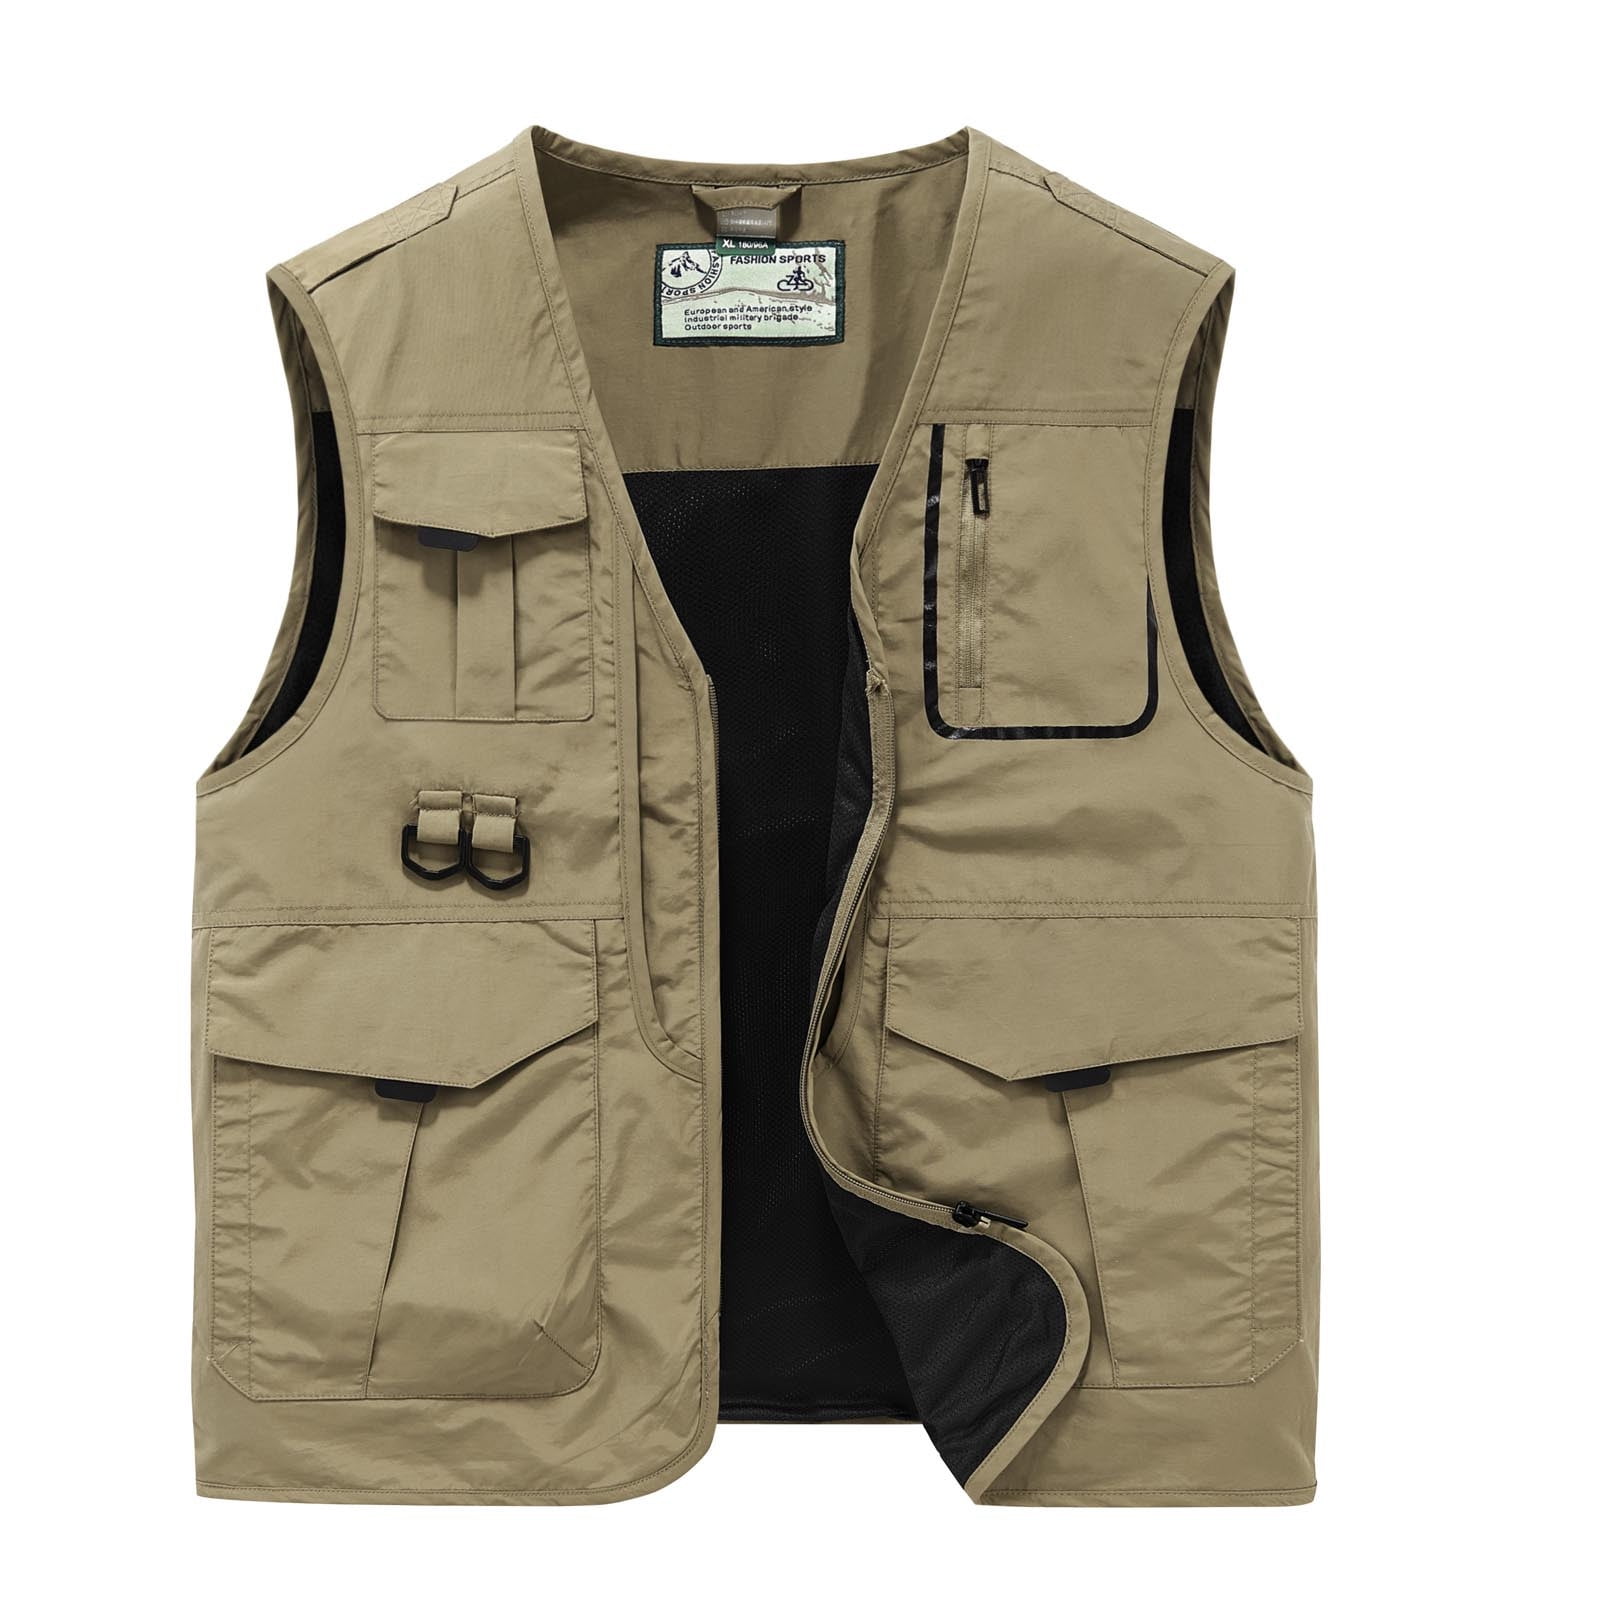 Men's Casual Outdoor Vest Lightweight Sleeveless Zip Up Breathable